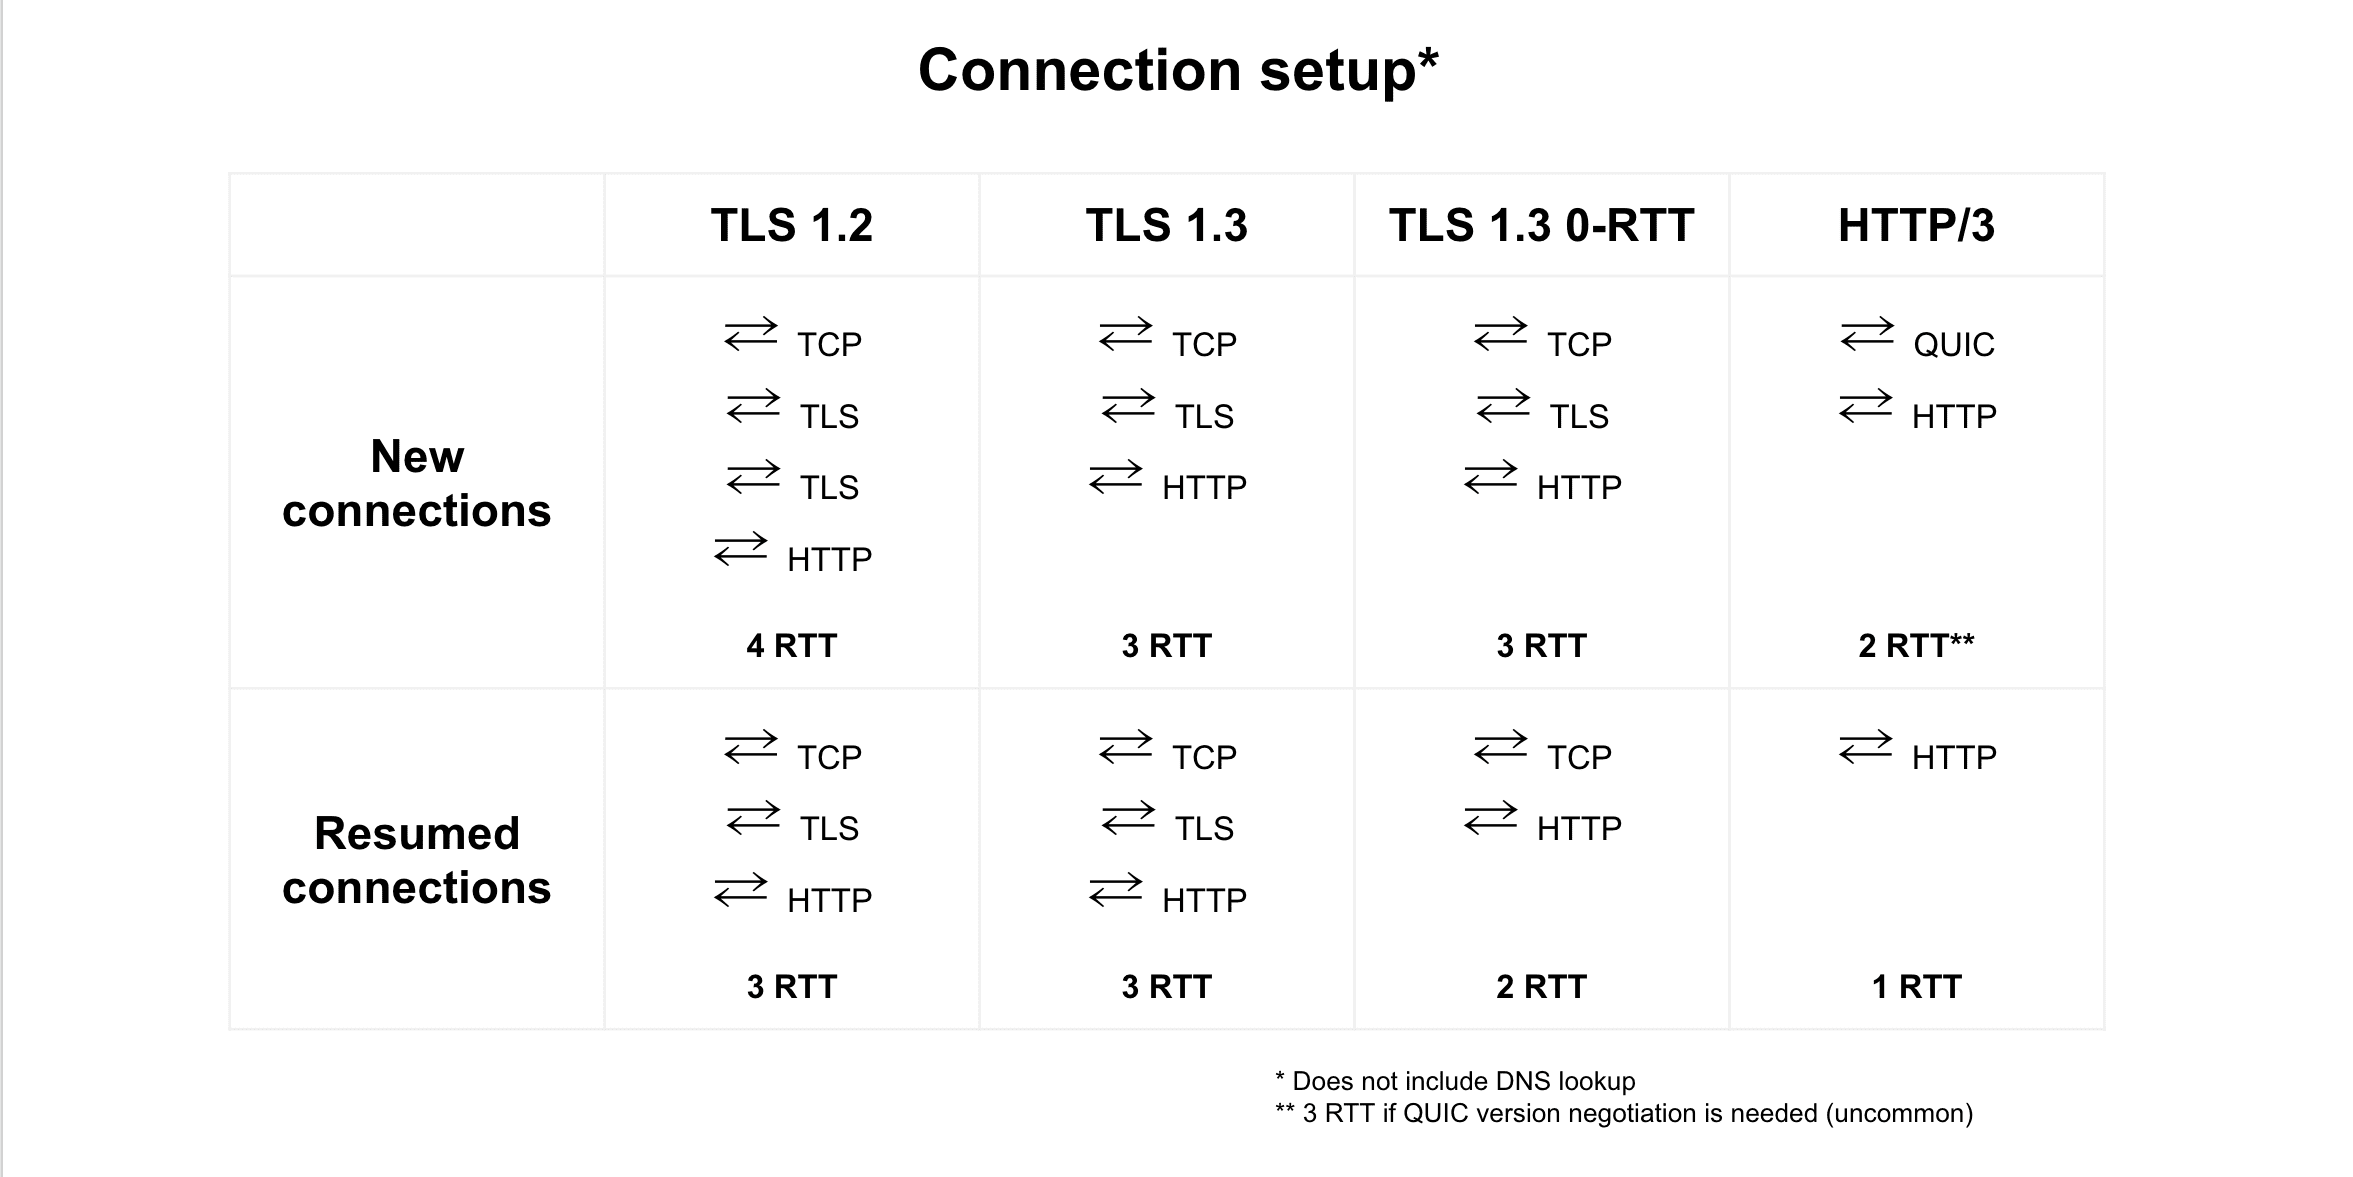 比較 TLS 1.2、TLS 1.3、TLS 1.3 0-RTT 與 HTTP/3 之間的恢復連線比較